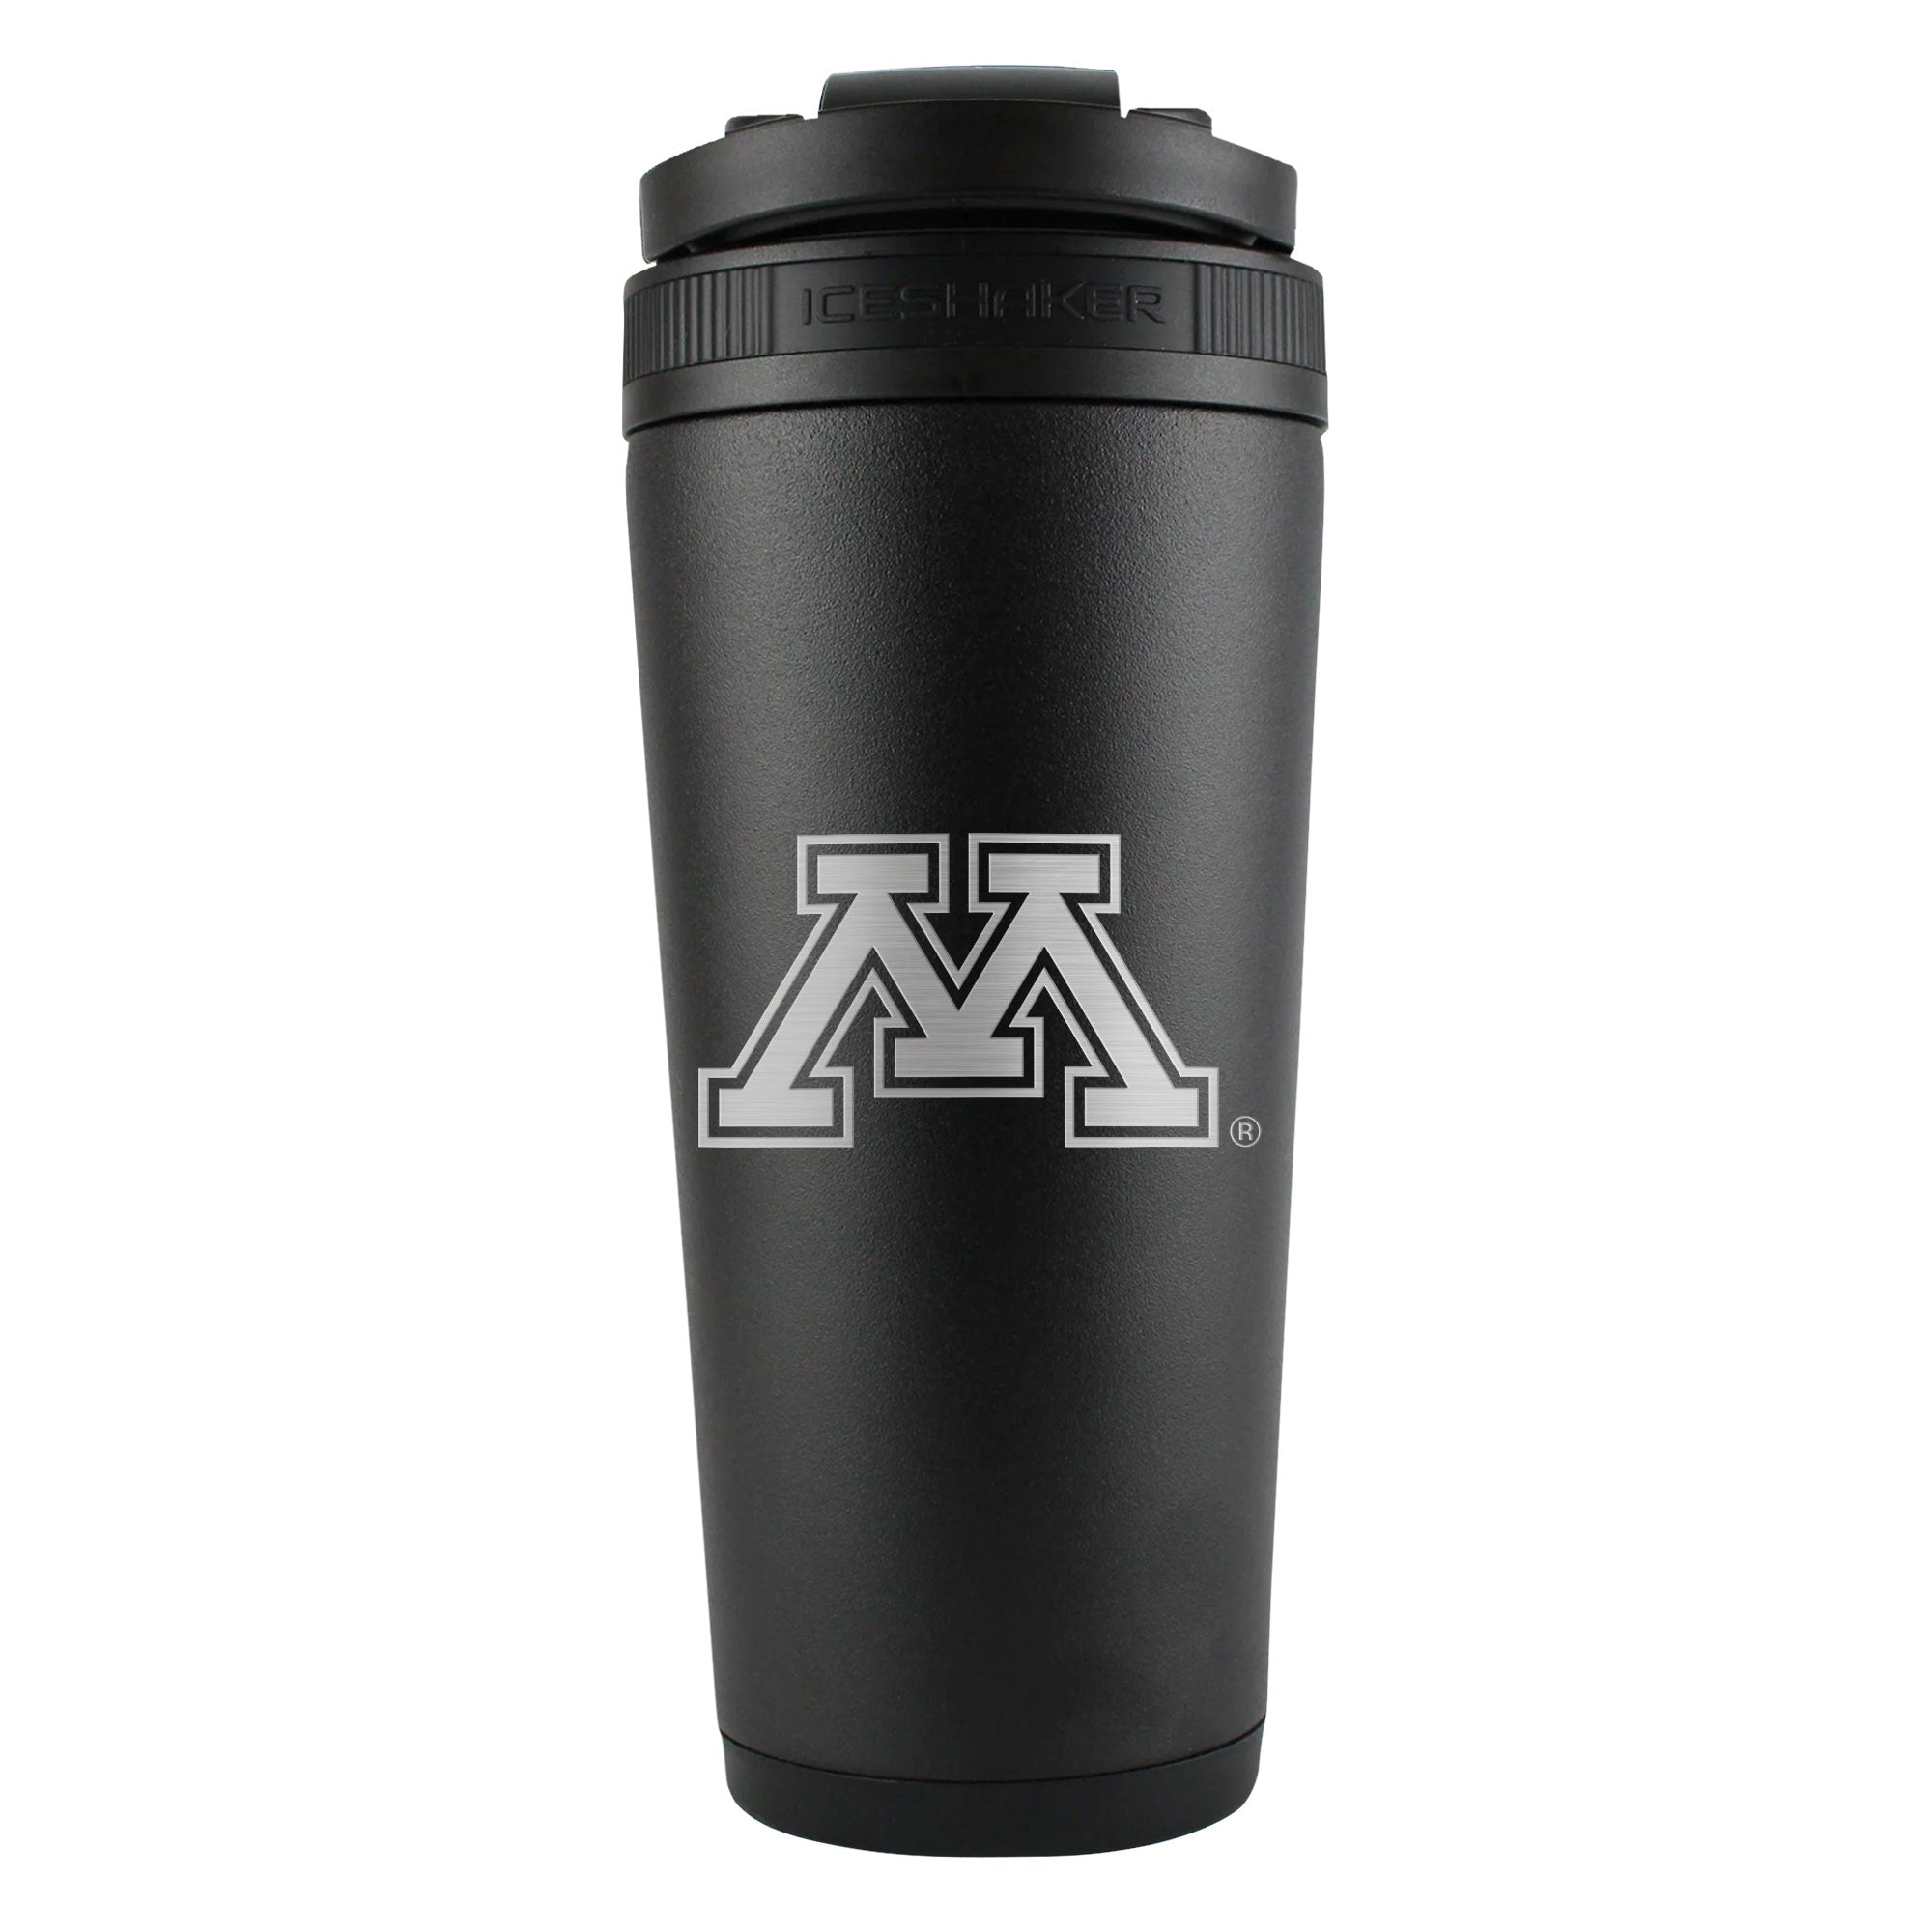 Officially Licensed University of Minnesota 26oz Ice Shaker - Black